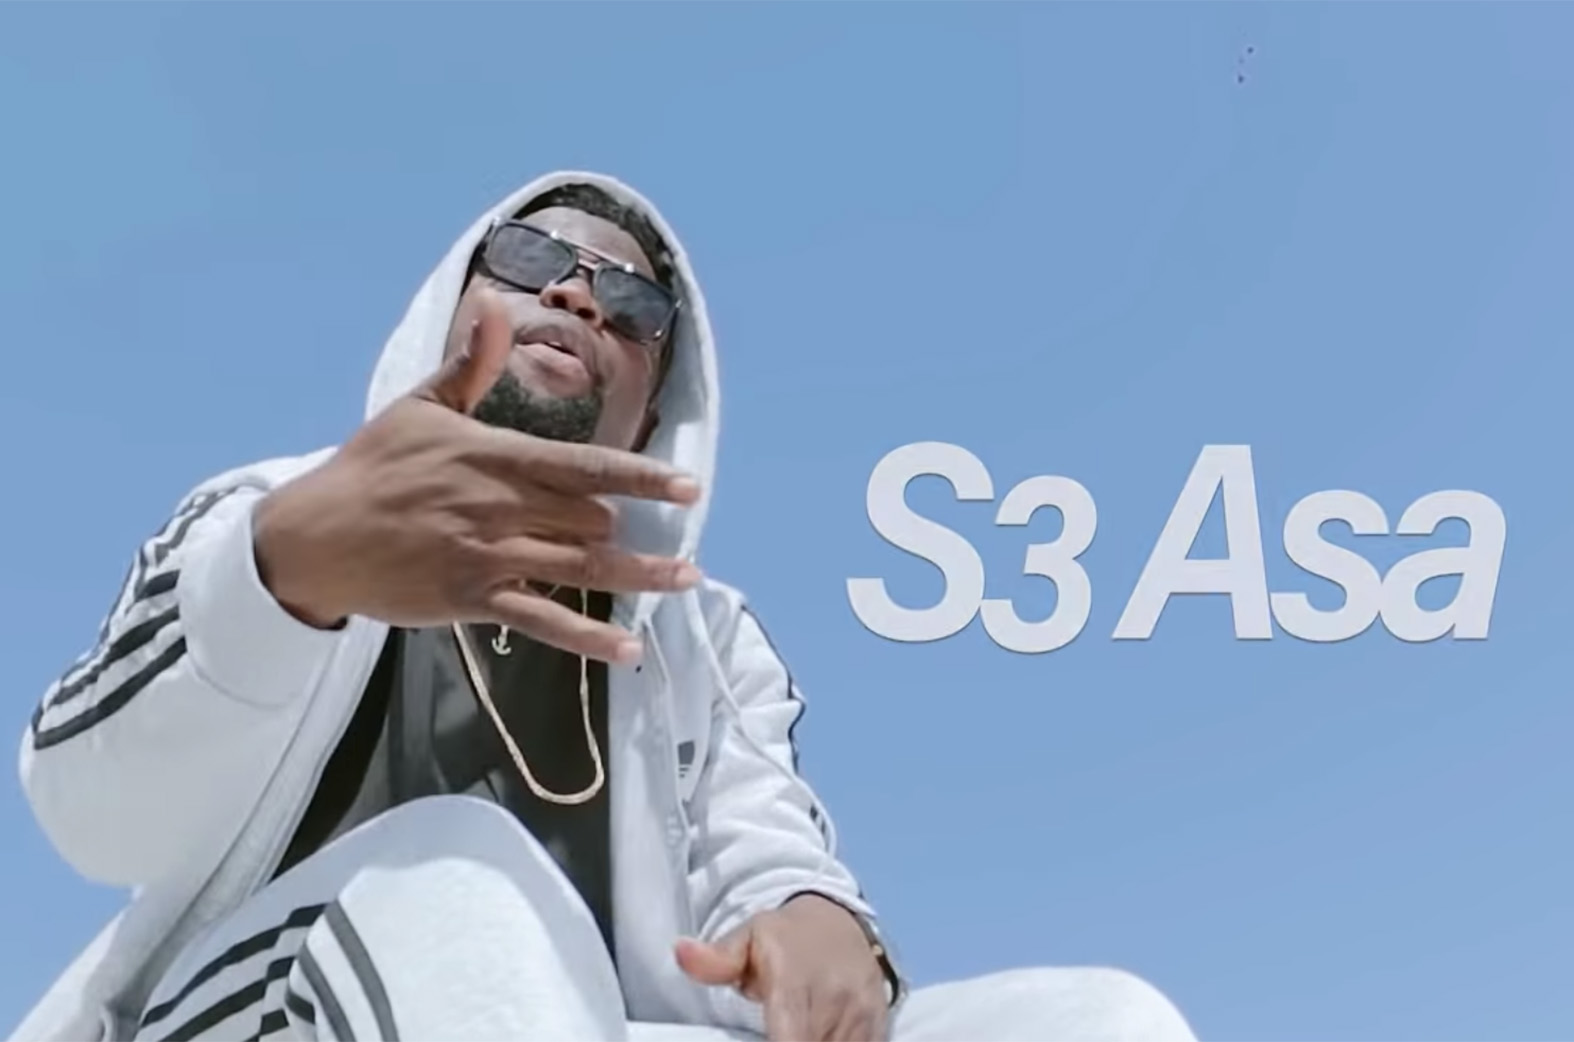 Video Premiere: S3 Asa by Nero X